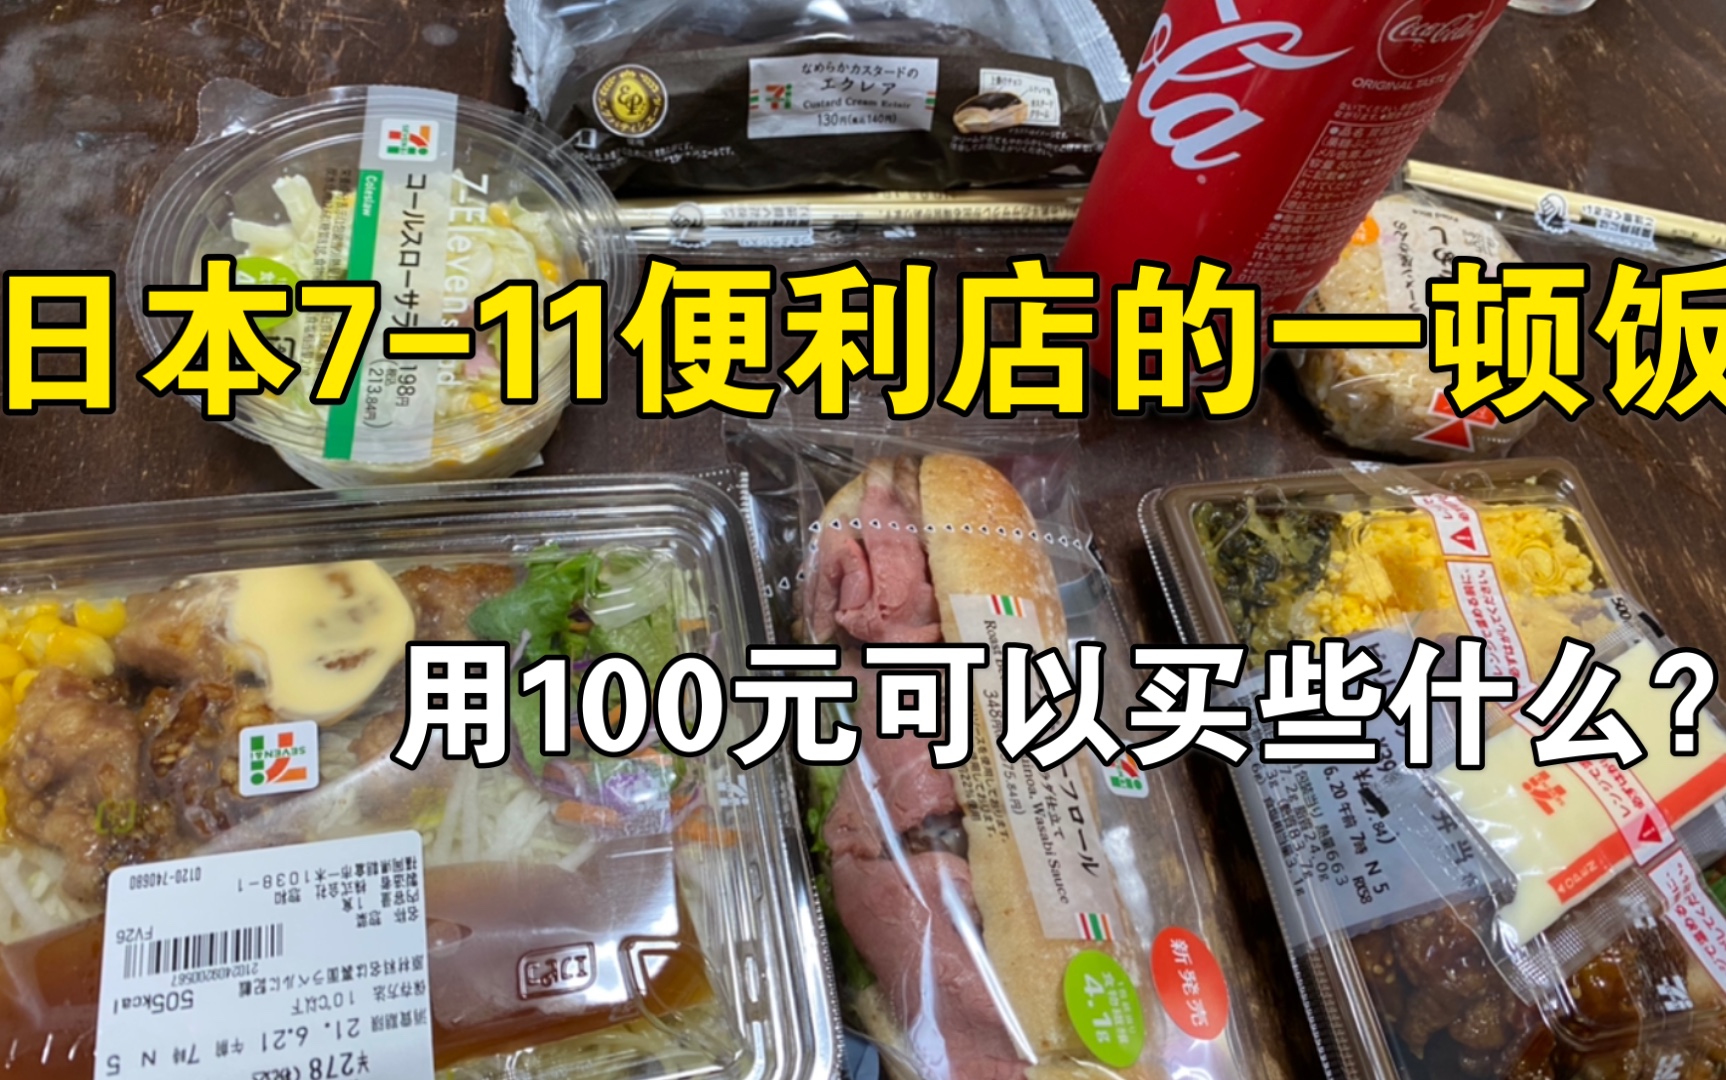 日本留学生的午饭，在7-11 便利店用100块钱可以买到些什么？